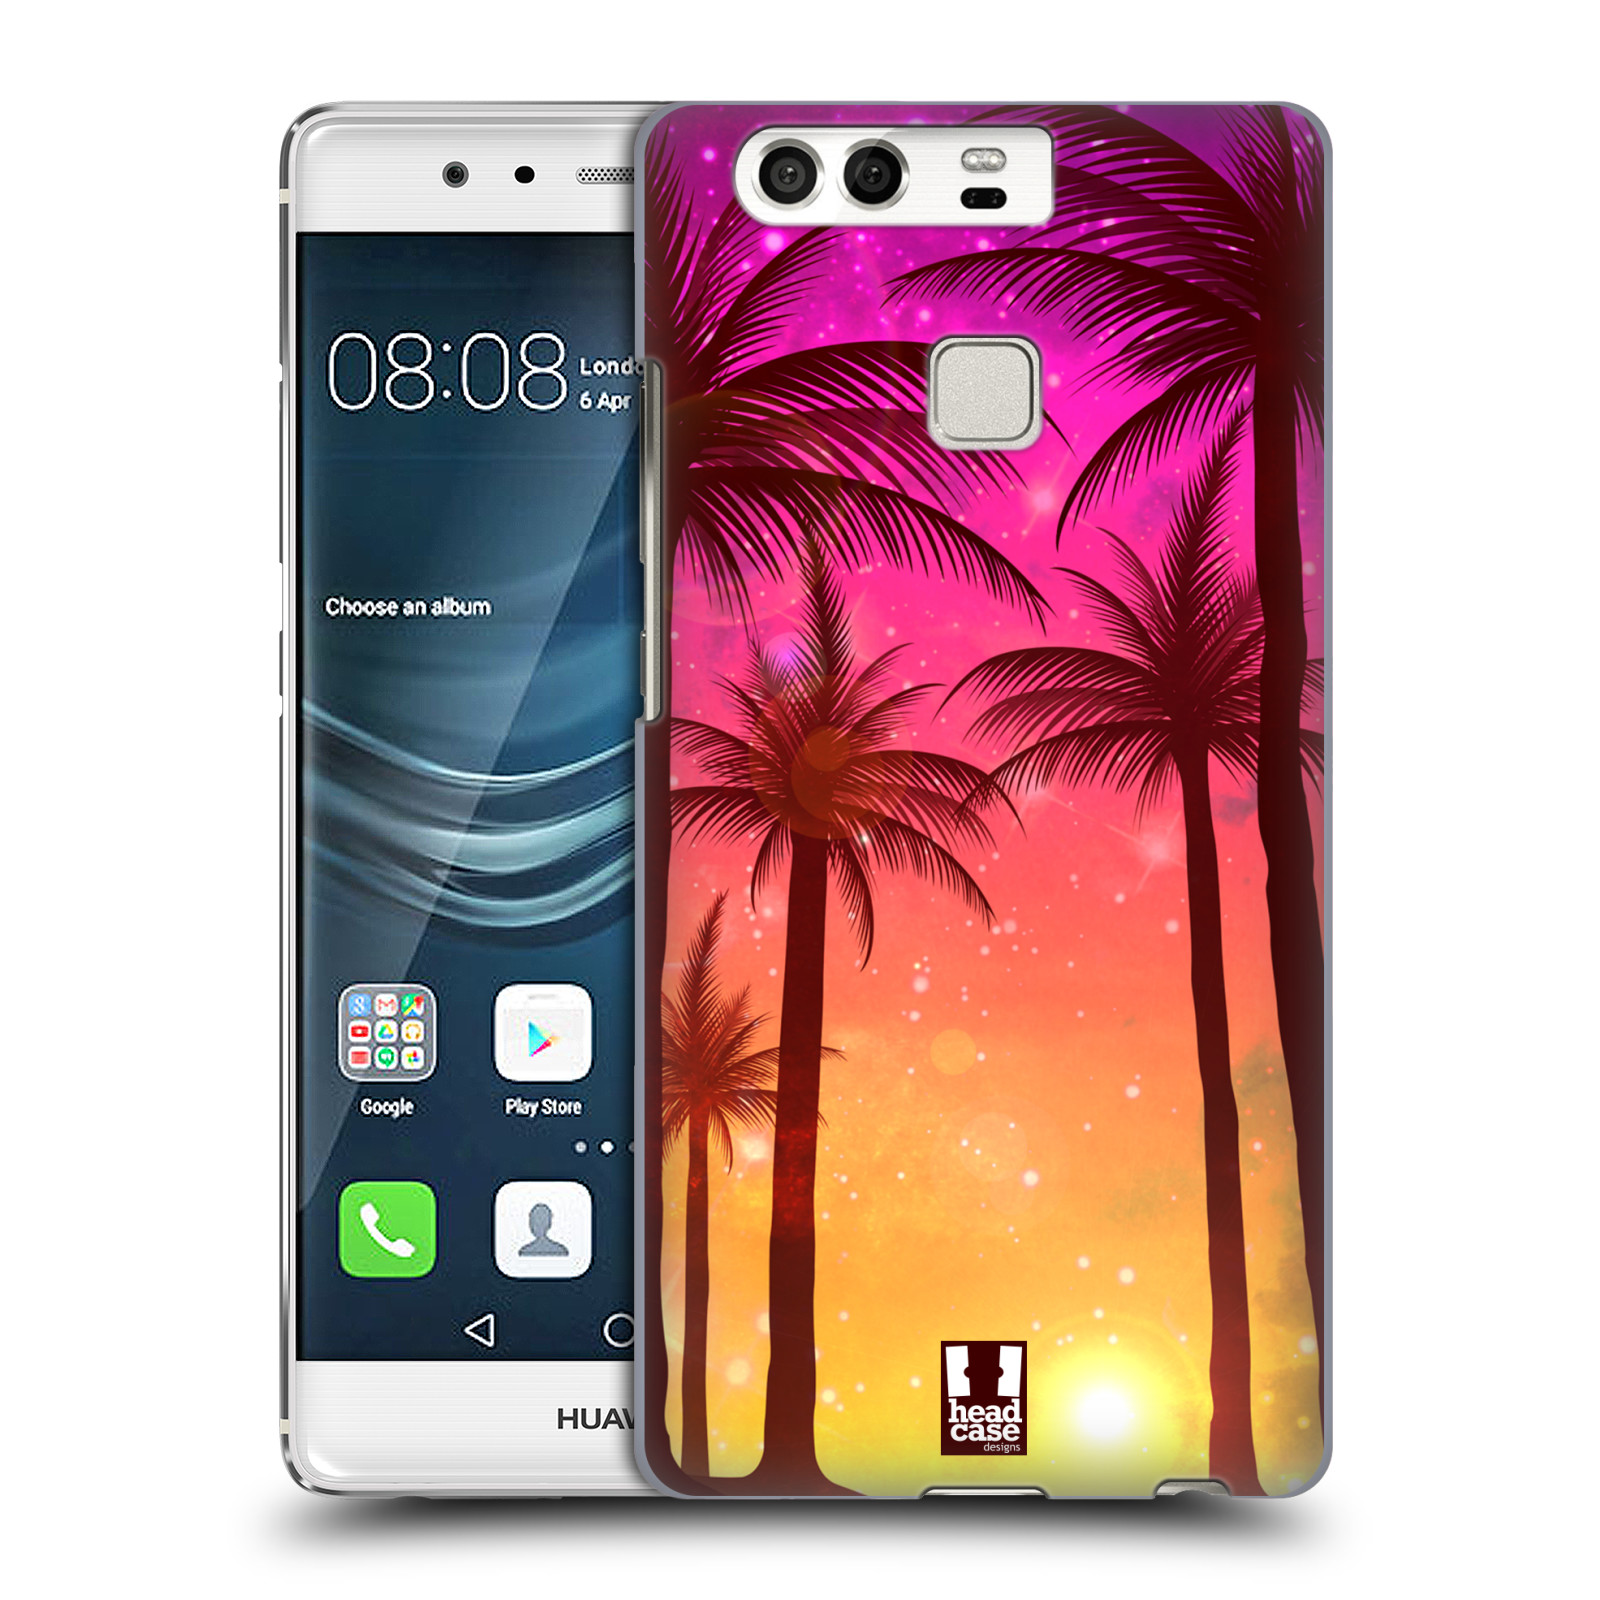 HEAD CASE plastový obal na mobil Huawei P9 / P9 DUAL SIM vzor Kreslený motiv silueta moře a palmy RŮŽOVÁ